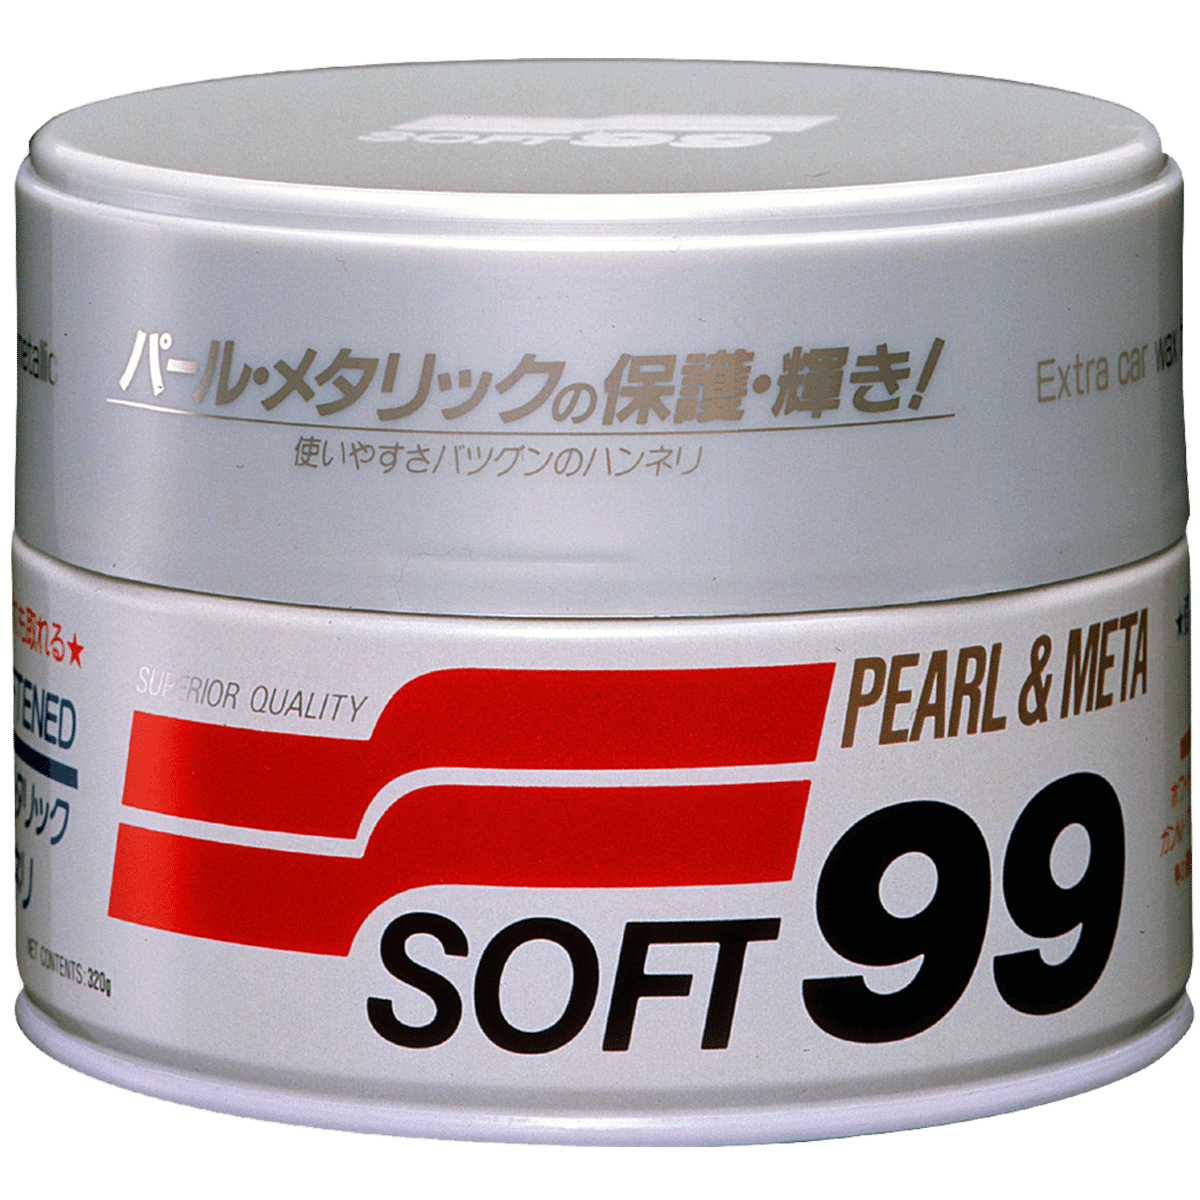 SOFT99 Pearl & Metallic Soft Wax 320g Wosk do Jasnych Lakierów Metalicznych i Perłowych